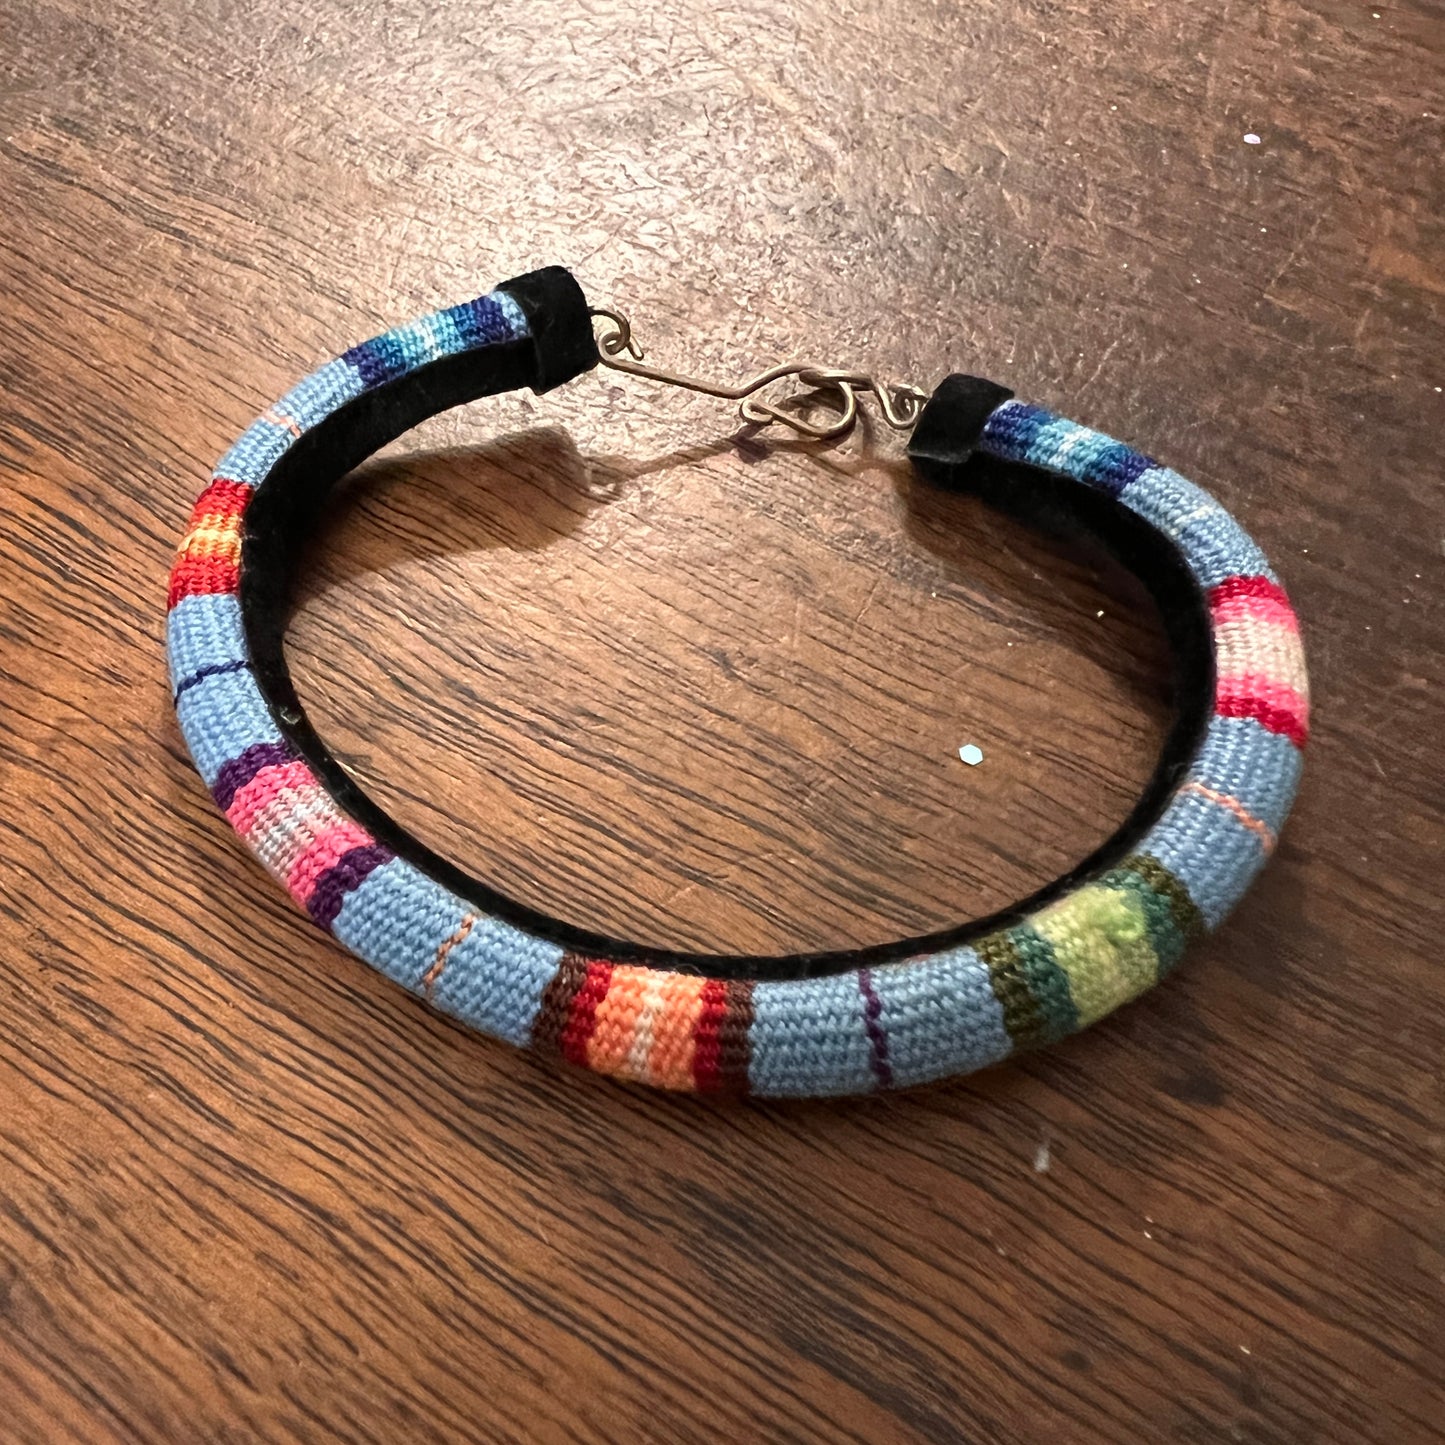 Handmade Manta Inca bracelet.